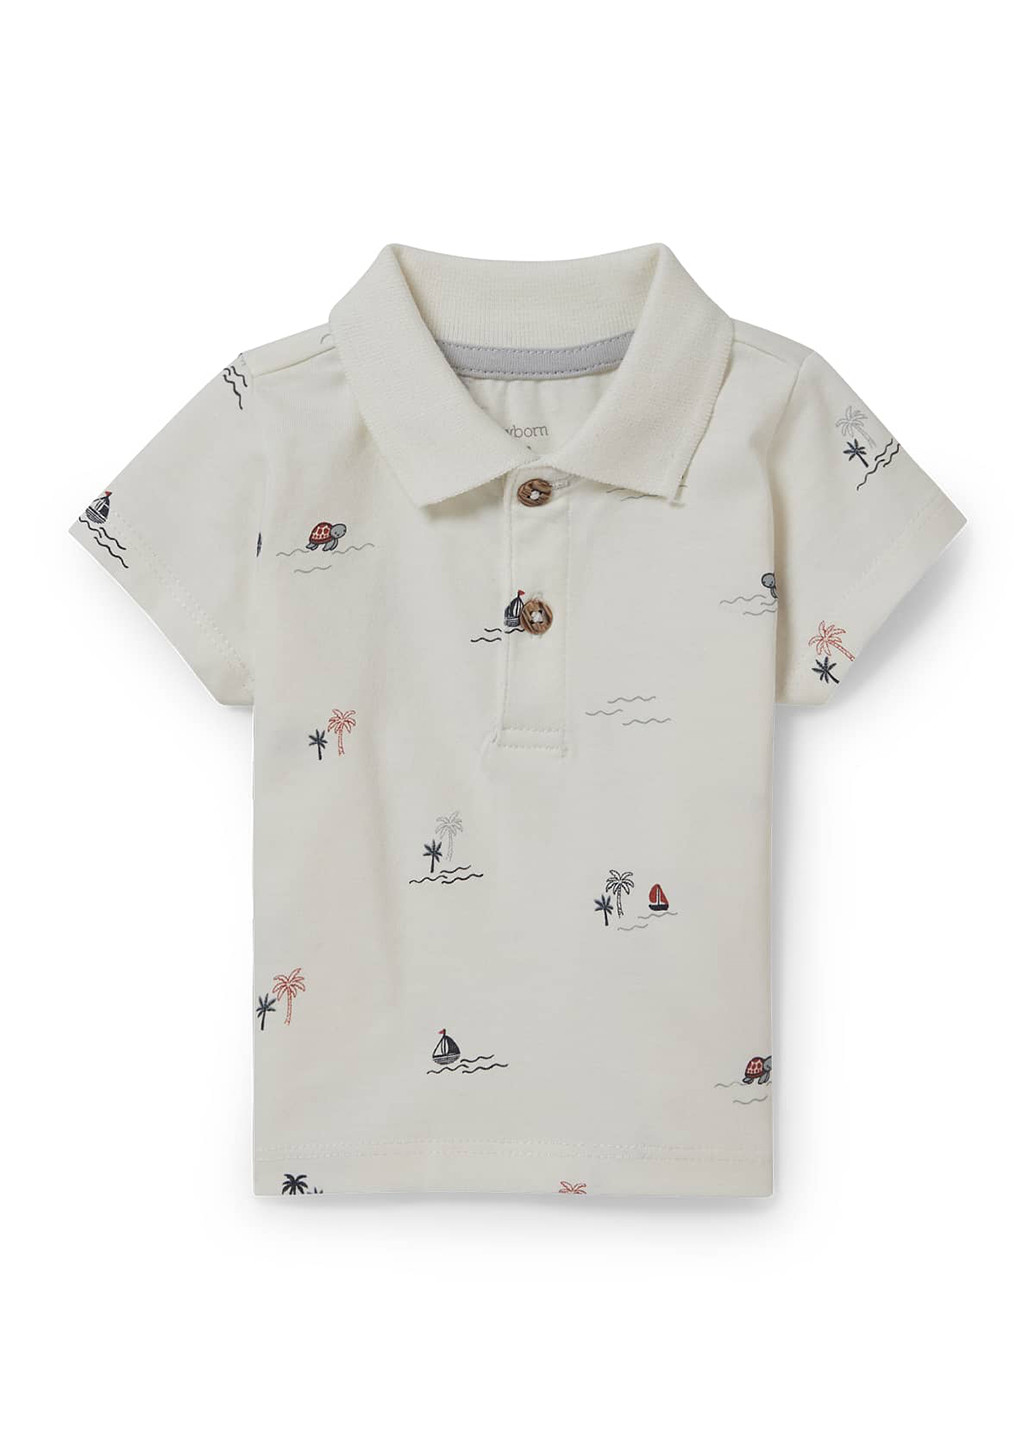 Молочная детская футболка-поло для мальчика C&A морская тематика